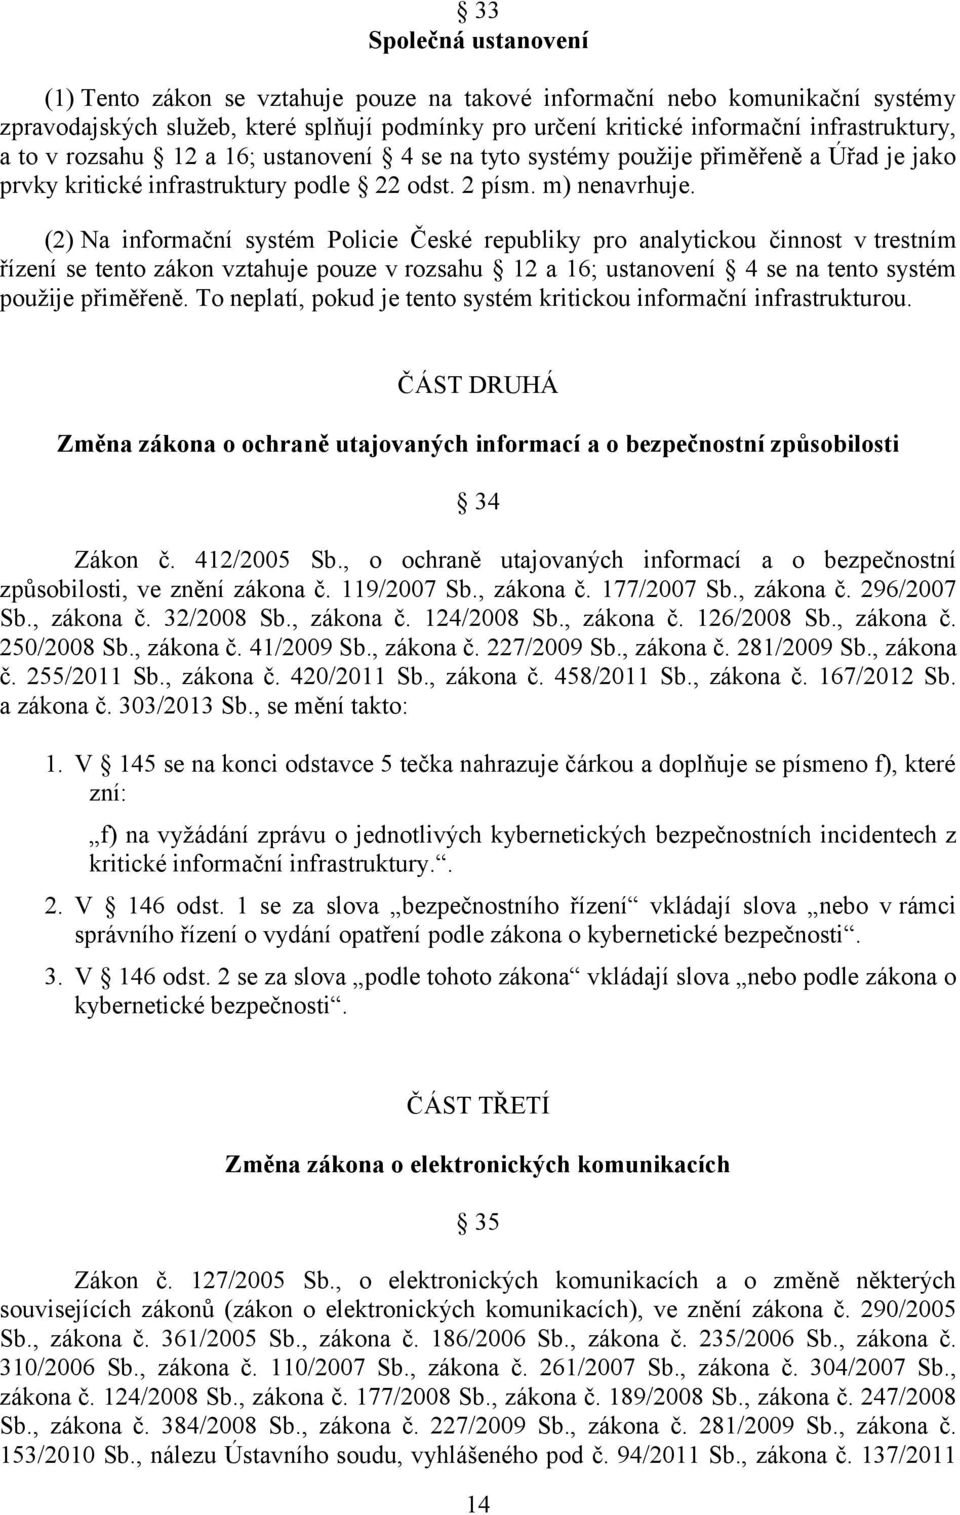 (2) Na informační systém Policie České republiky pro analytickou činnost v trestním řízení se tento zákon vztahuje pouze v rozsahu 12 a 16; ustanovení 4 se na tento systém použije přiměřeně.